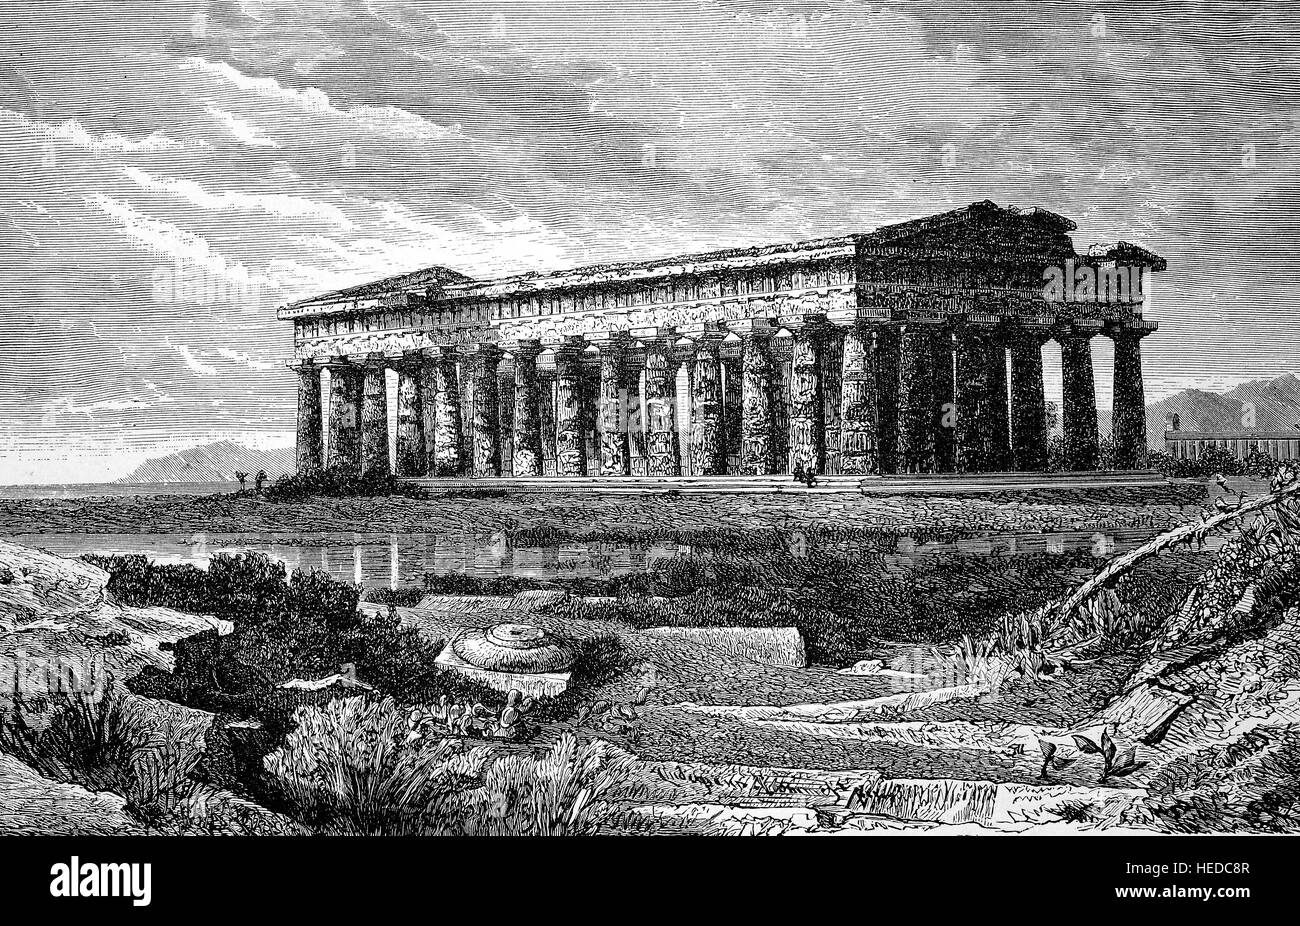 Poseidontempel zu Pästum, Italia, sicilia, tempio di Poseidone a Pästum, da una xilografia di 1880, digitale migliorata Foto Stock